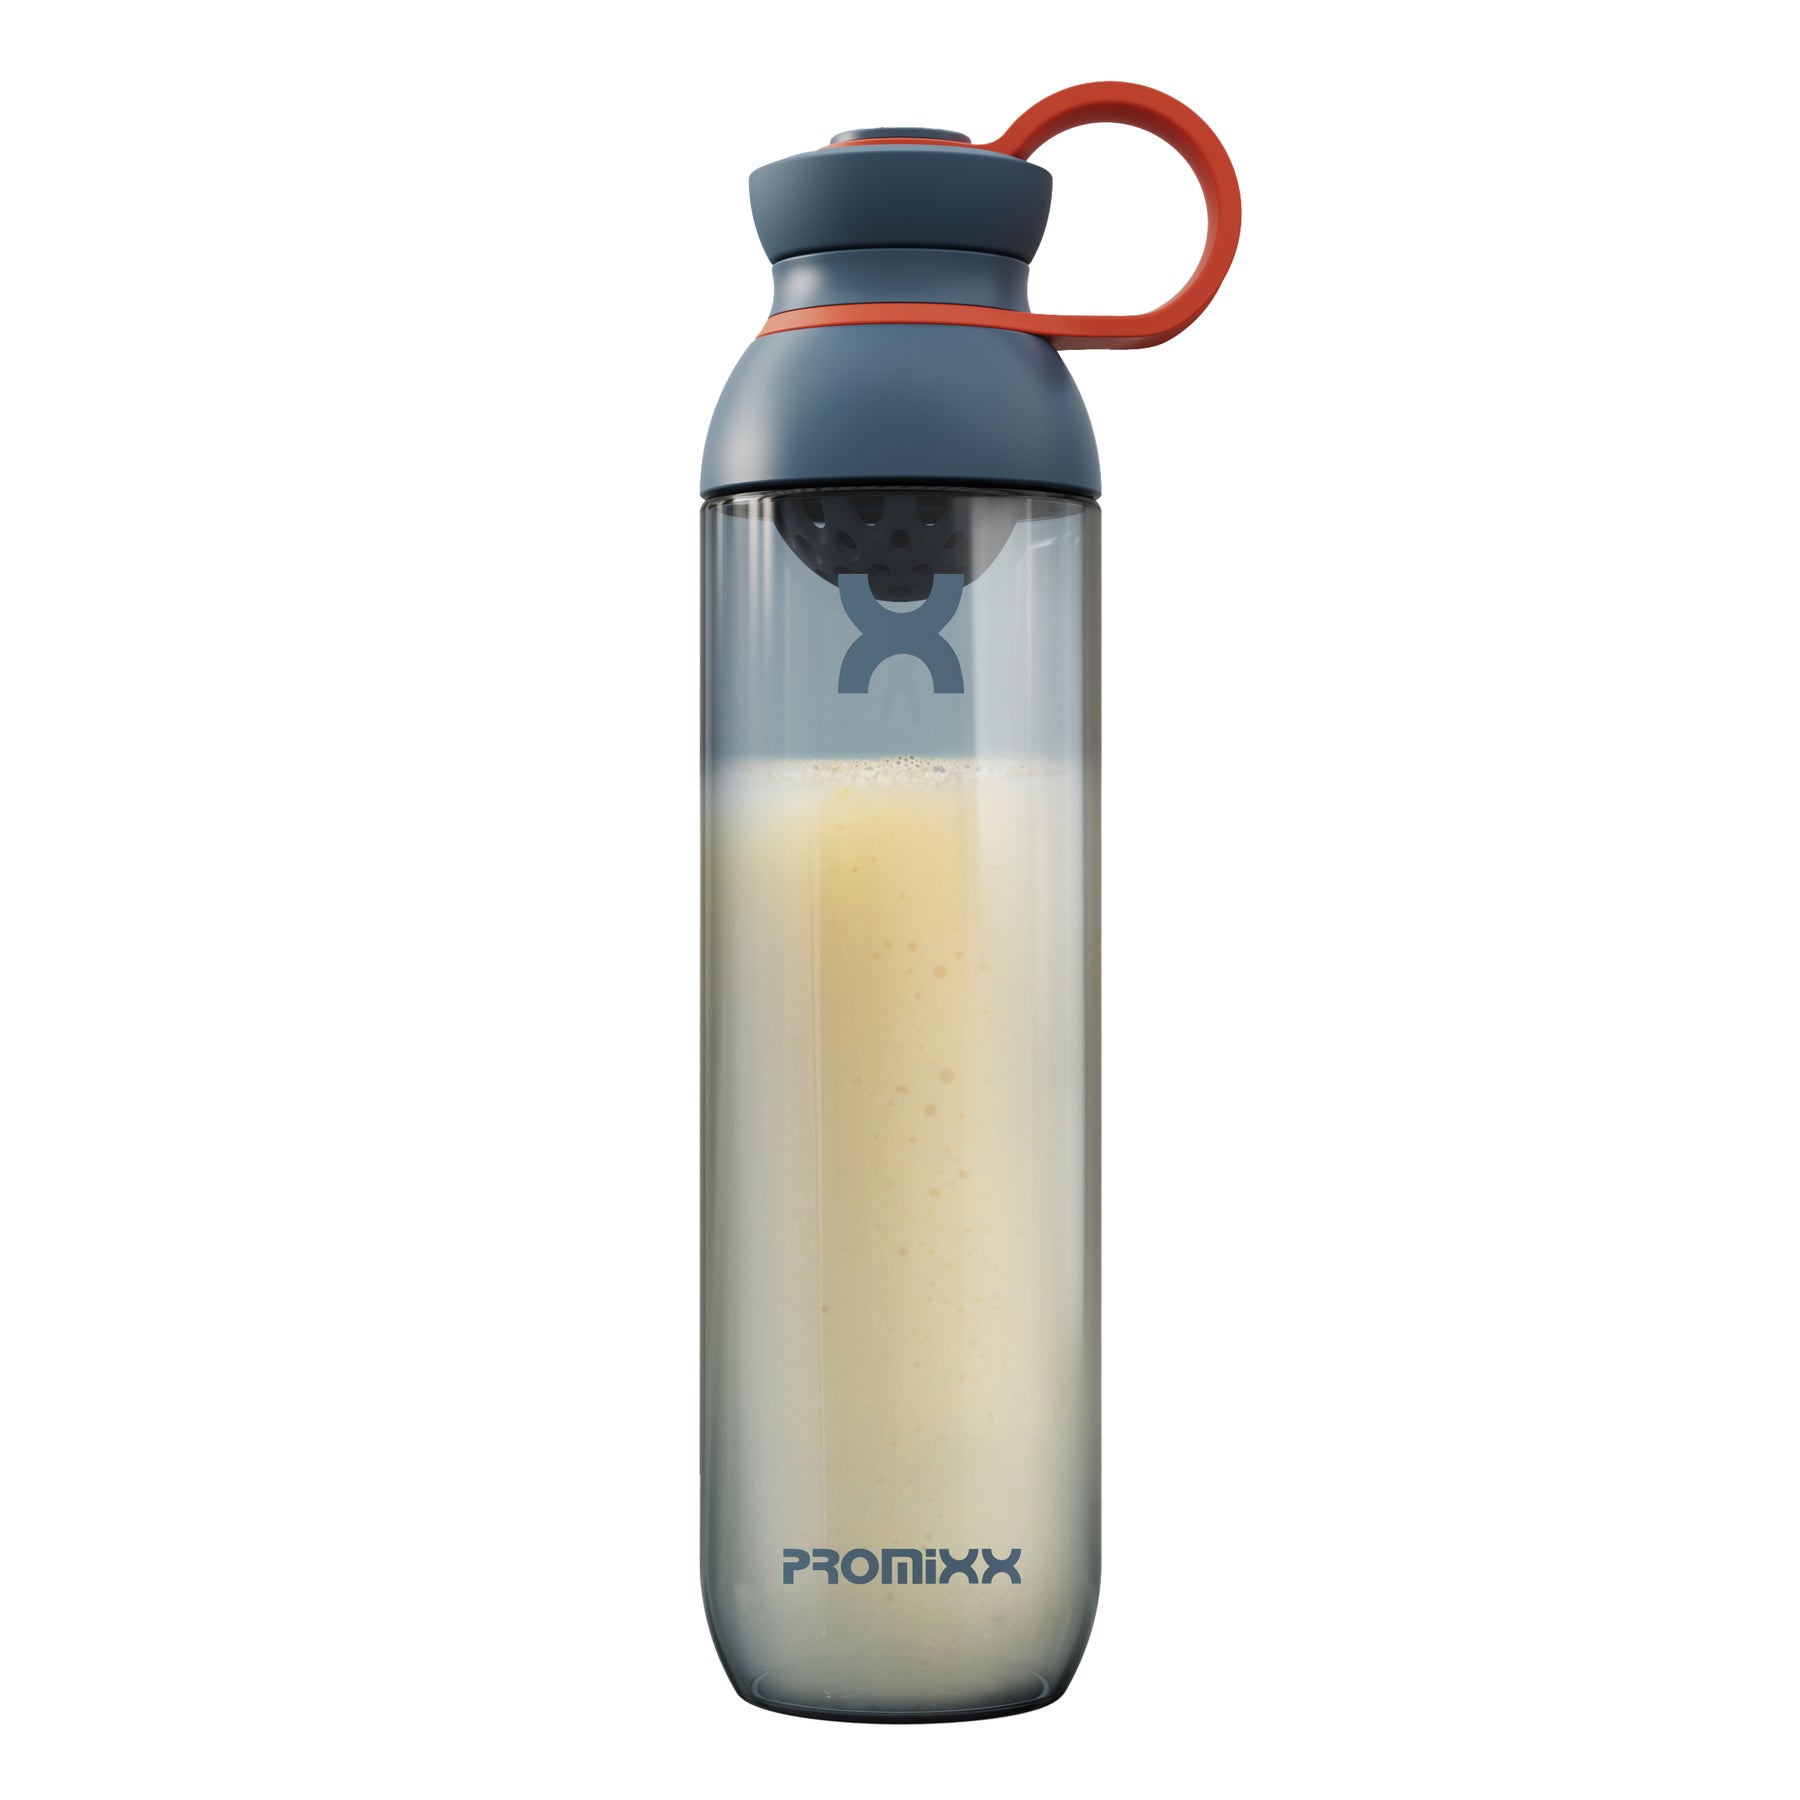 PURSUIT  Classic Protein Shaker Bottle - PROMiXX